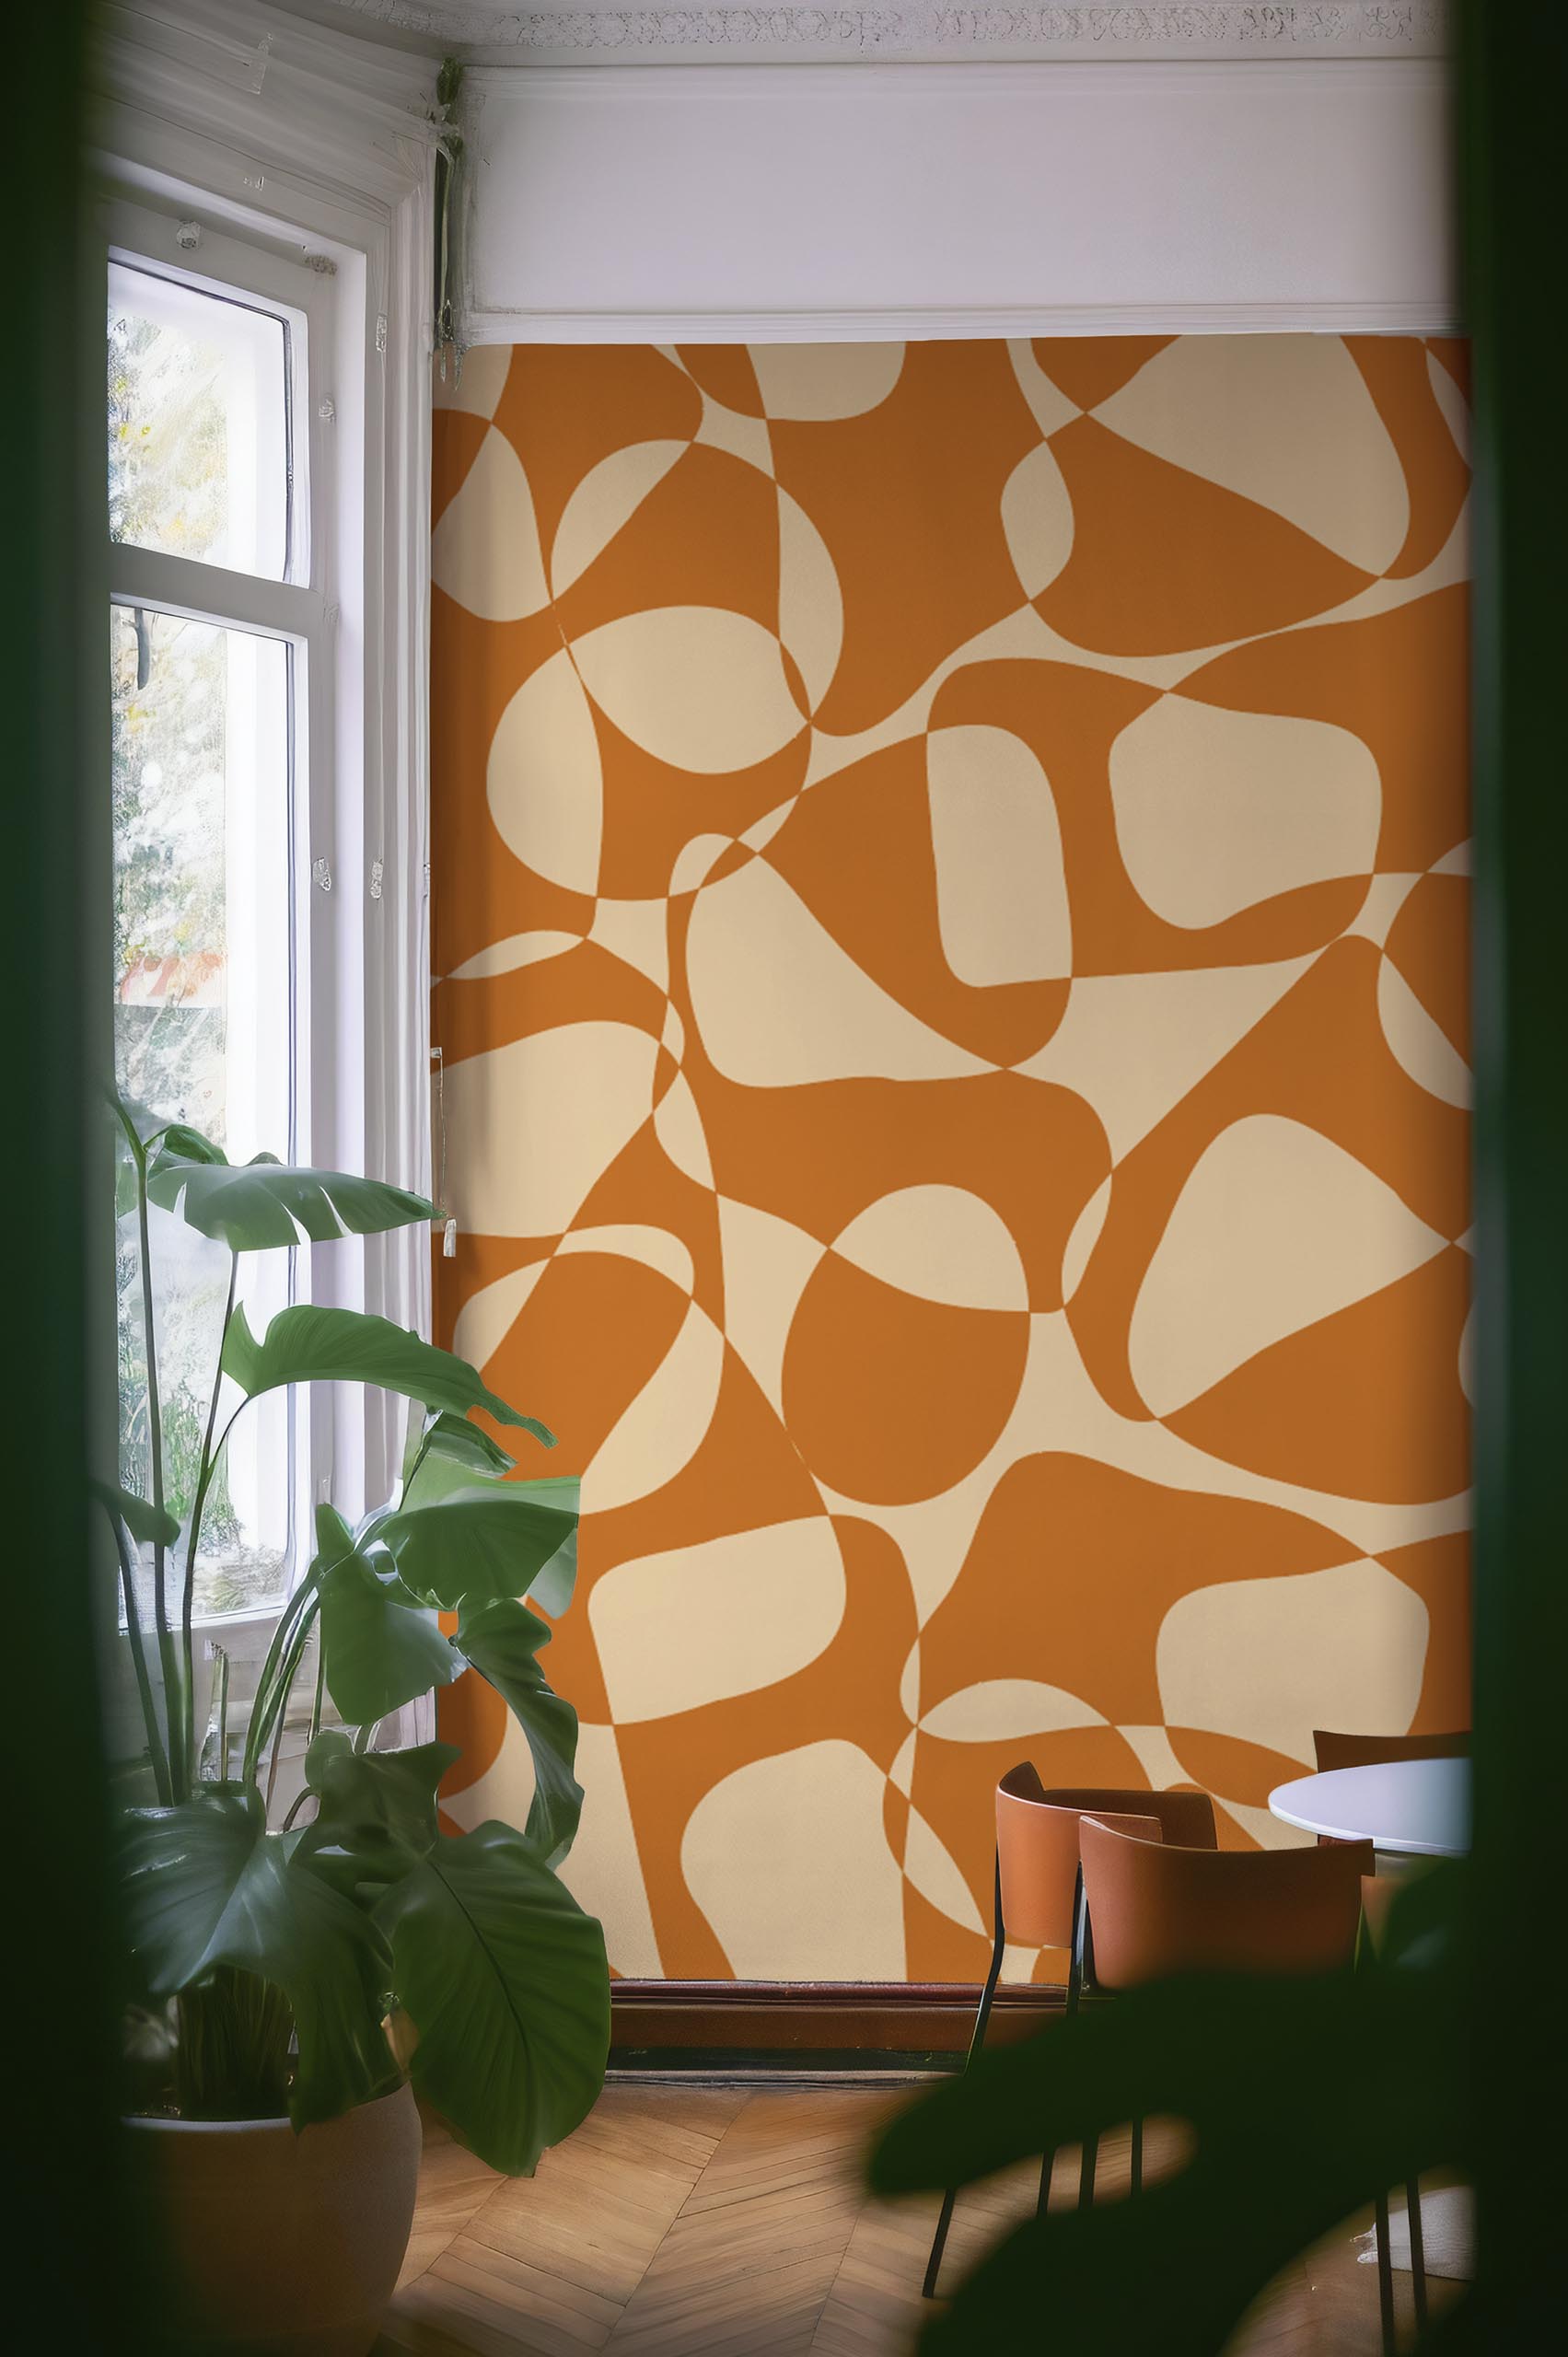 espace public orange papier peint formes organiques bicolores géométrique